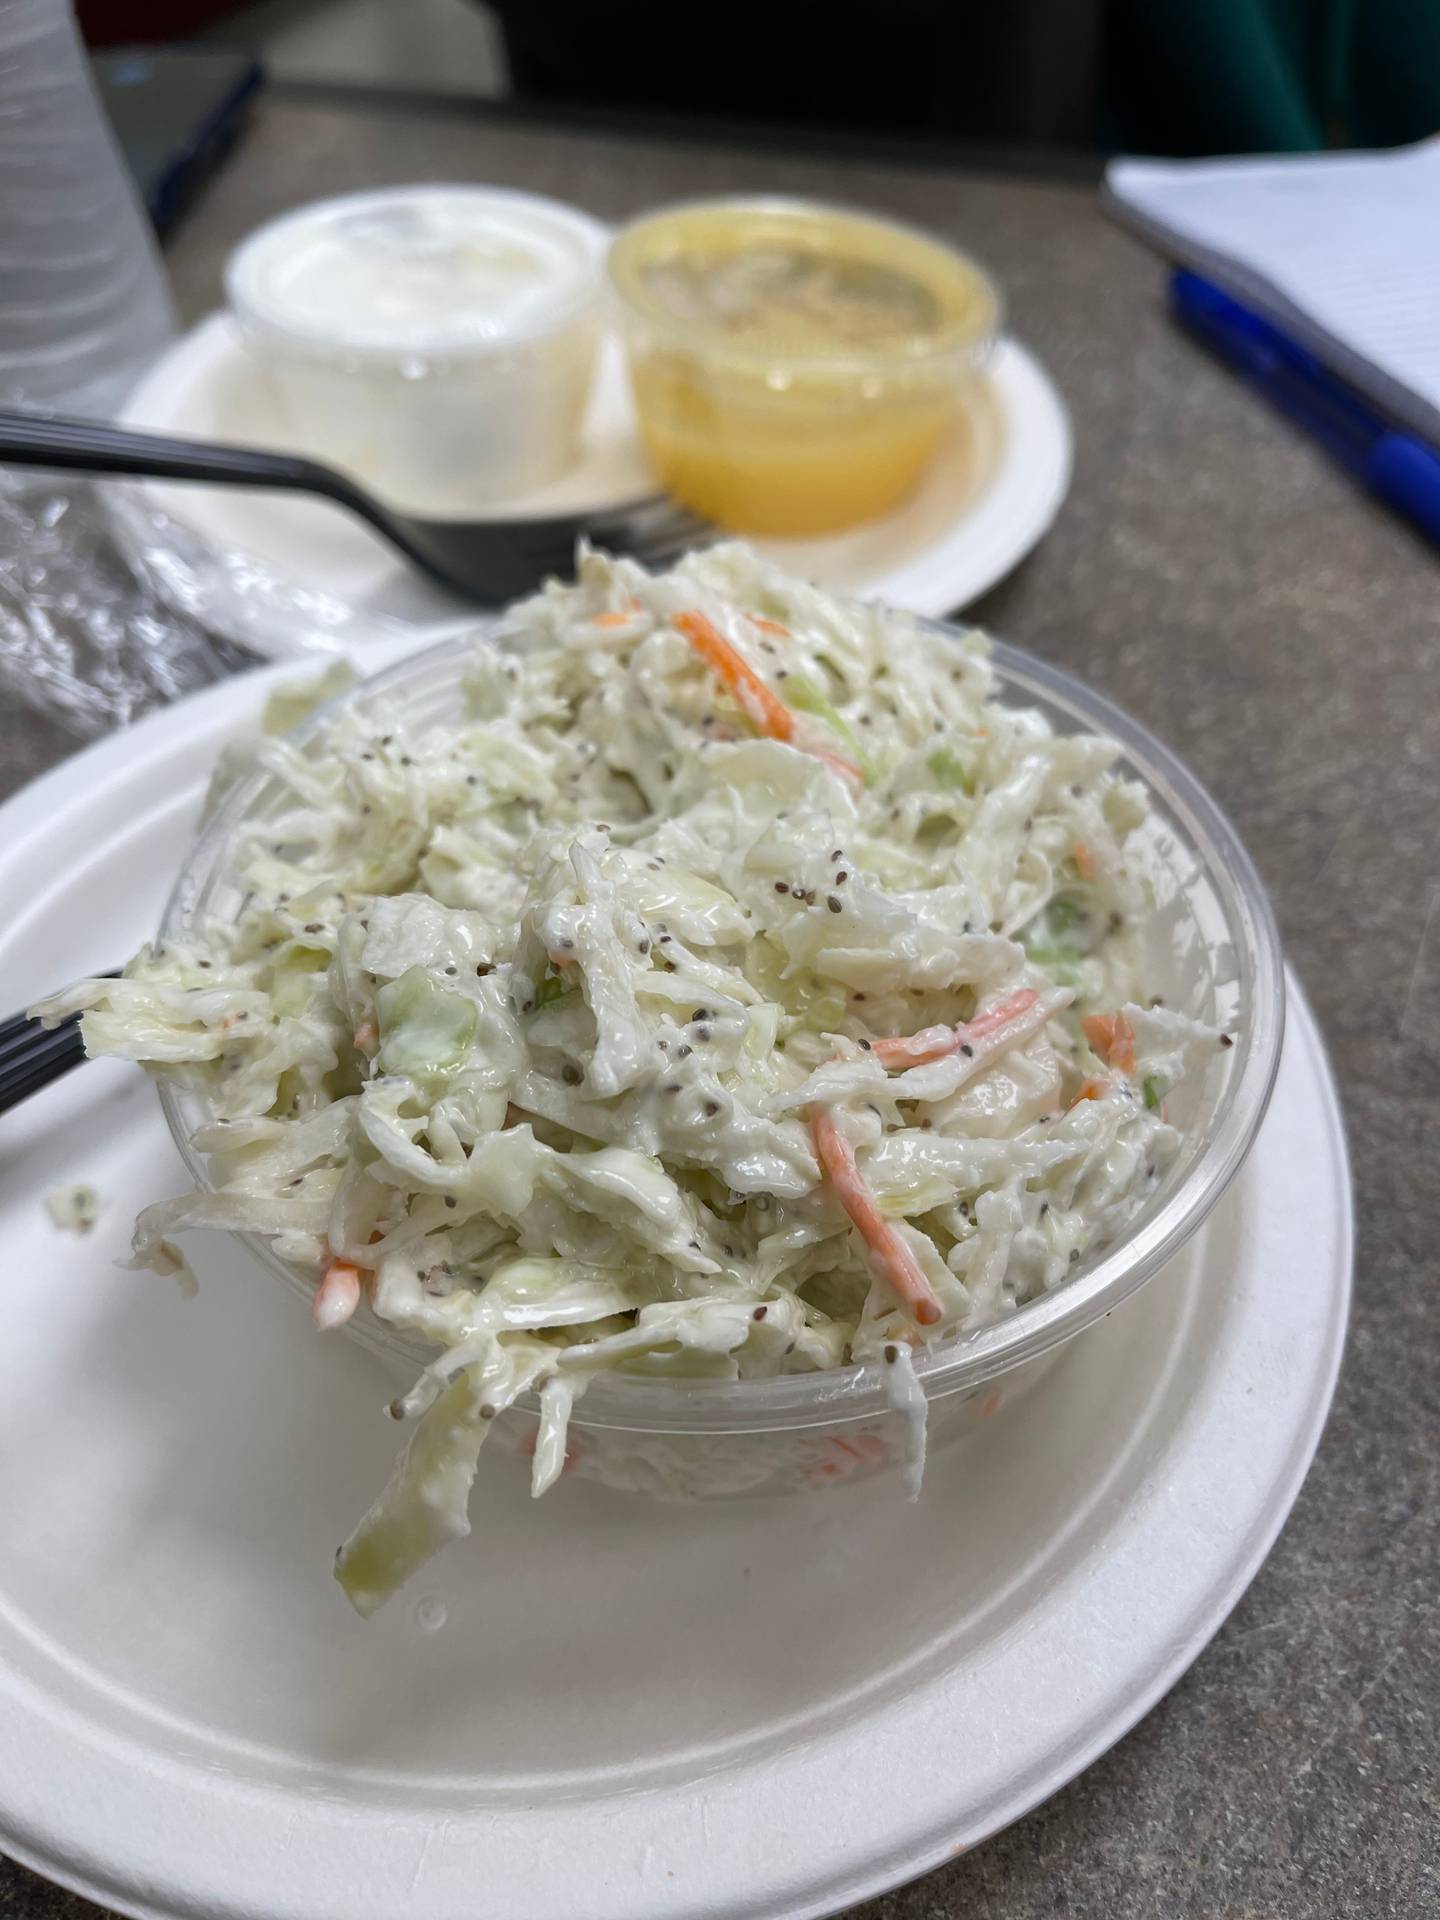 The coleslaw at Attman's Deli.